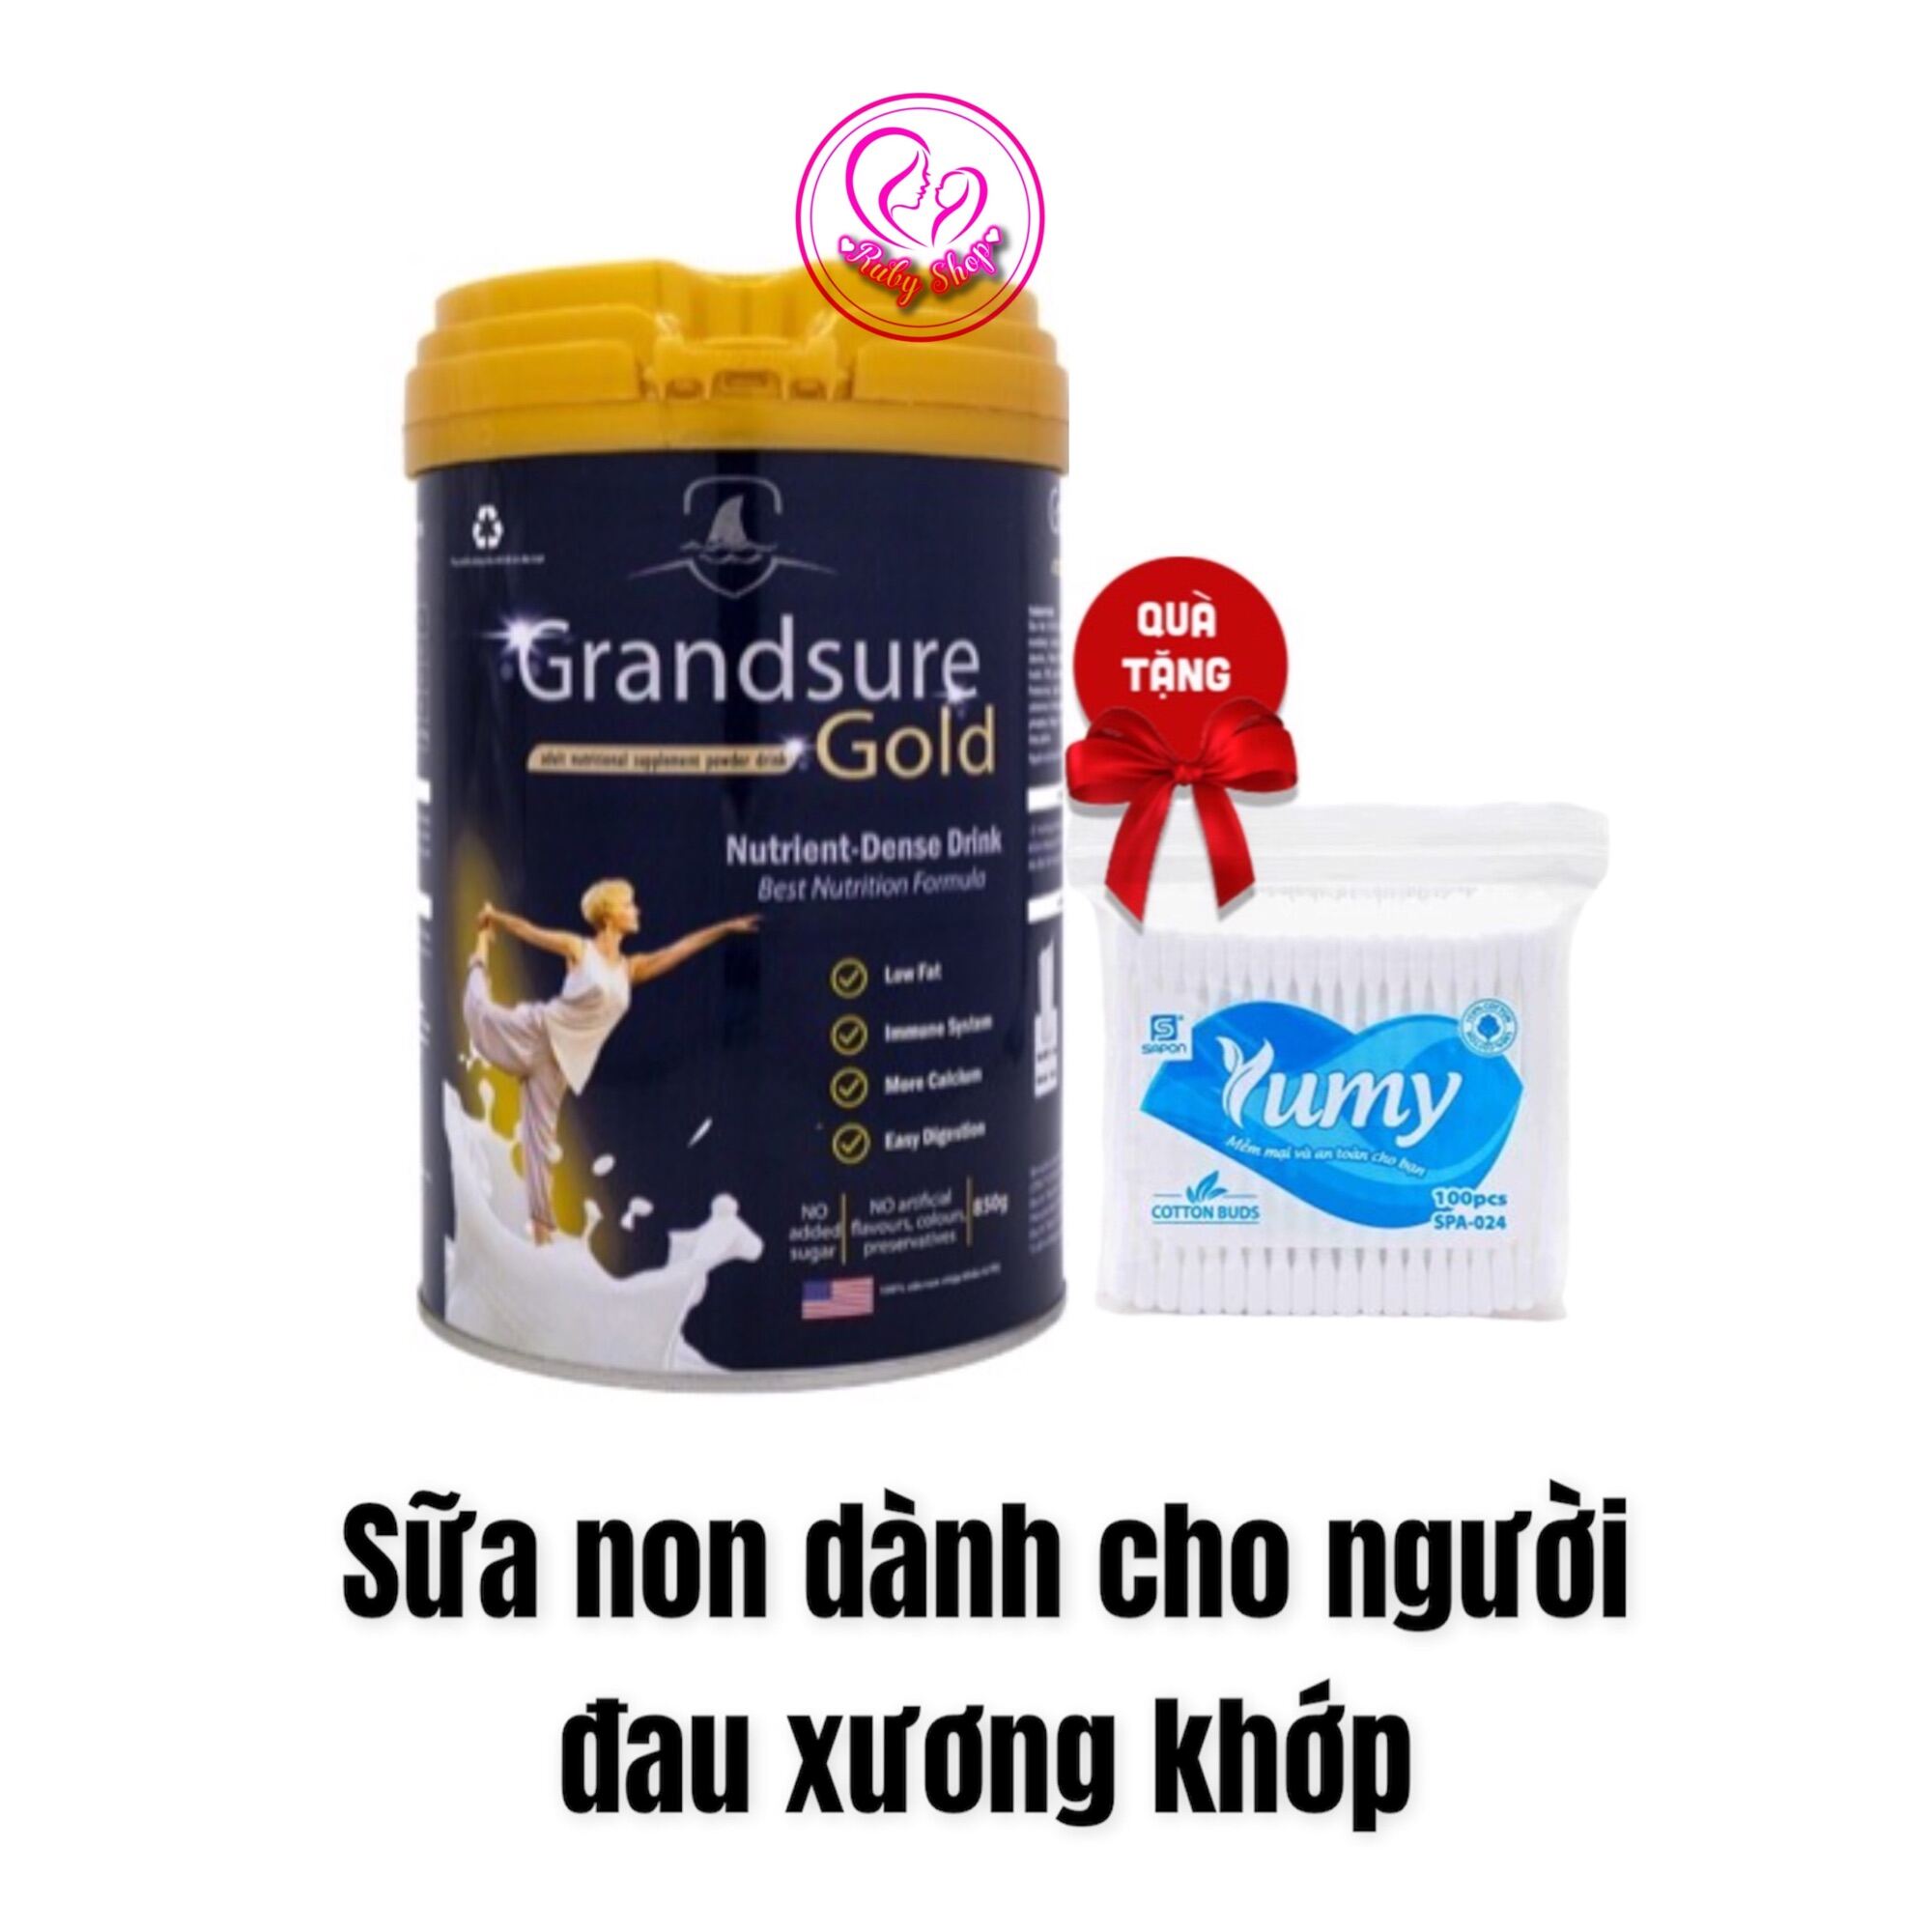 [Chính hãng] Sữa non xương khớp Grandsure Gold 850g - dinh dưỡng chuyên biệt cho người xương khớp + tặng tăm bông giá rẻ